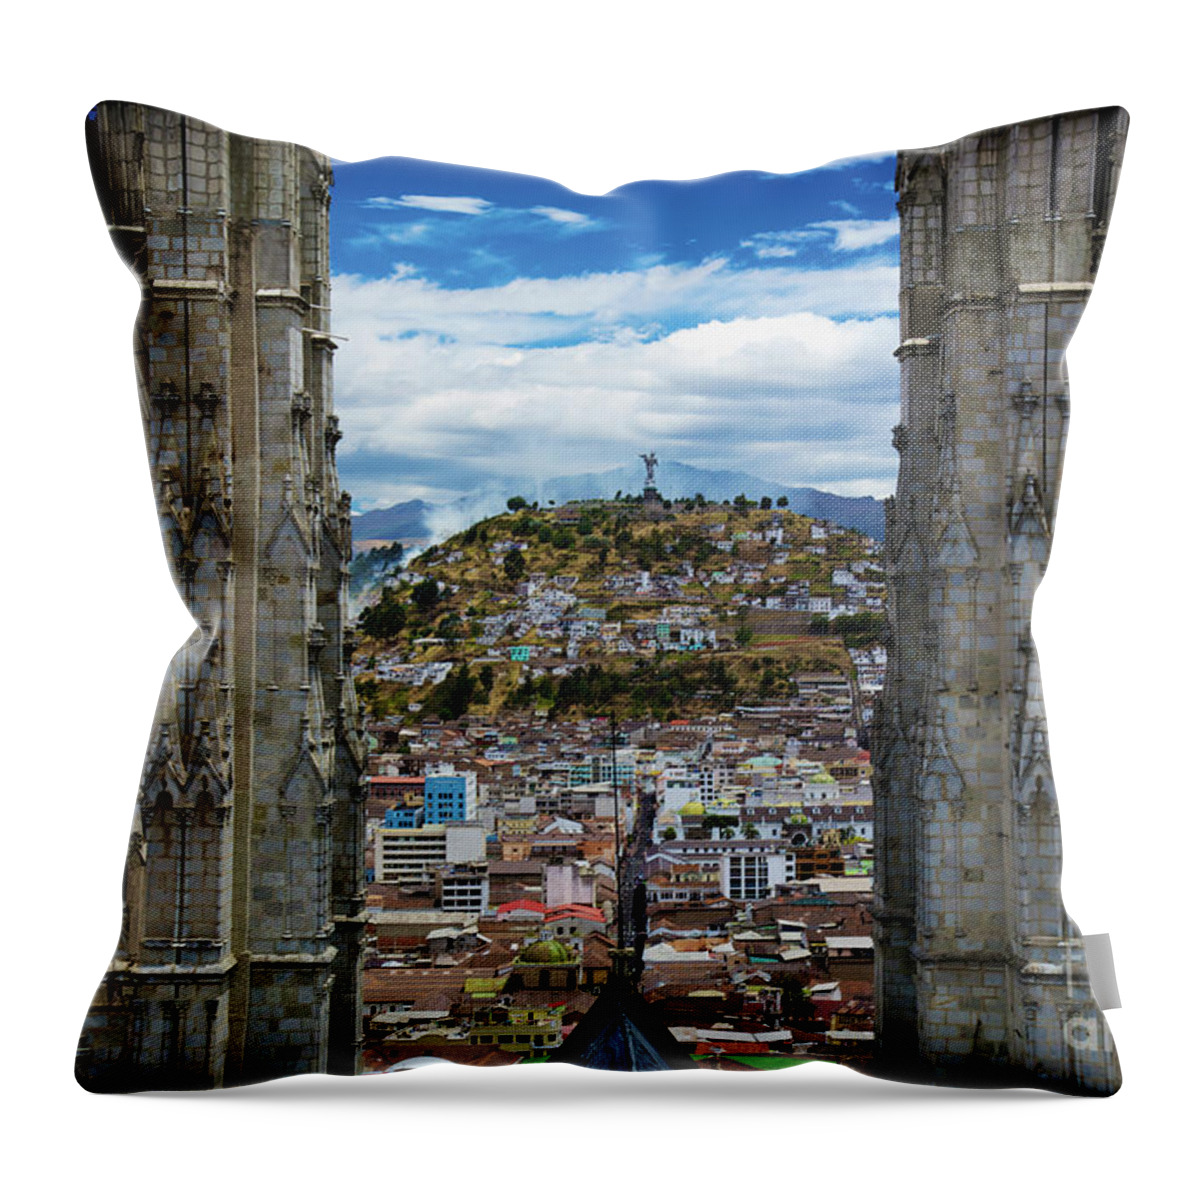 Ecuador Throw Pillow featuring the photograph Quito, Ecuador by David Little-Smith